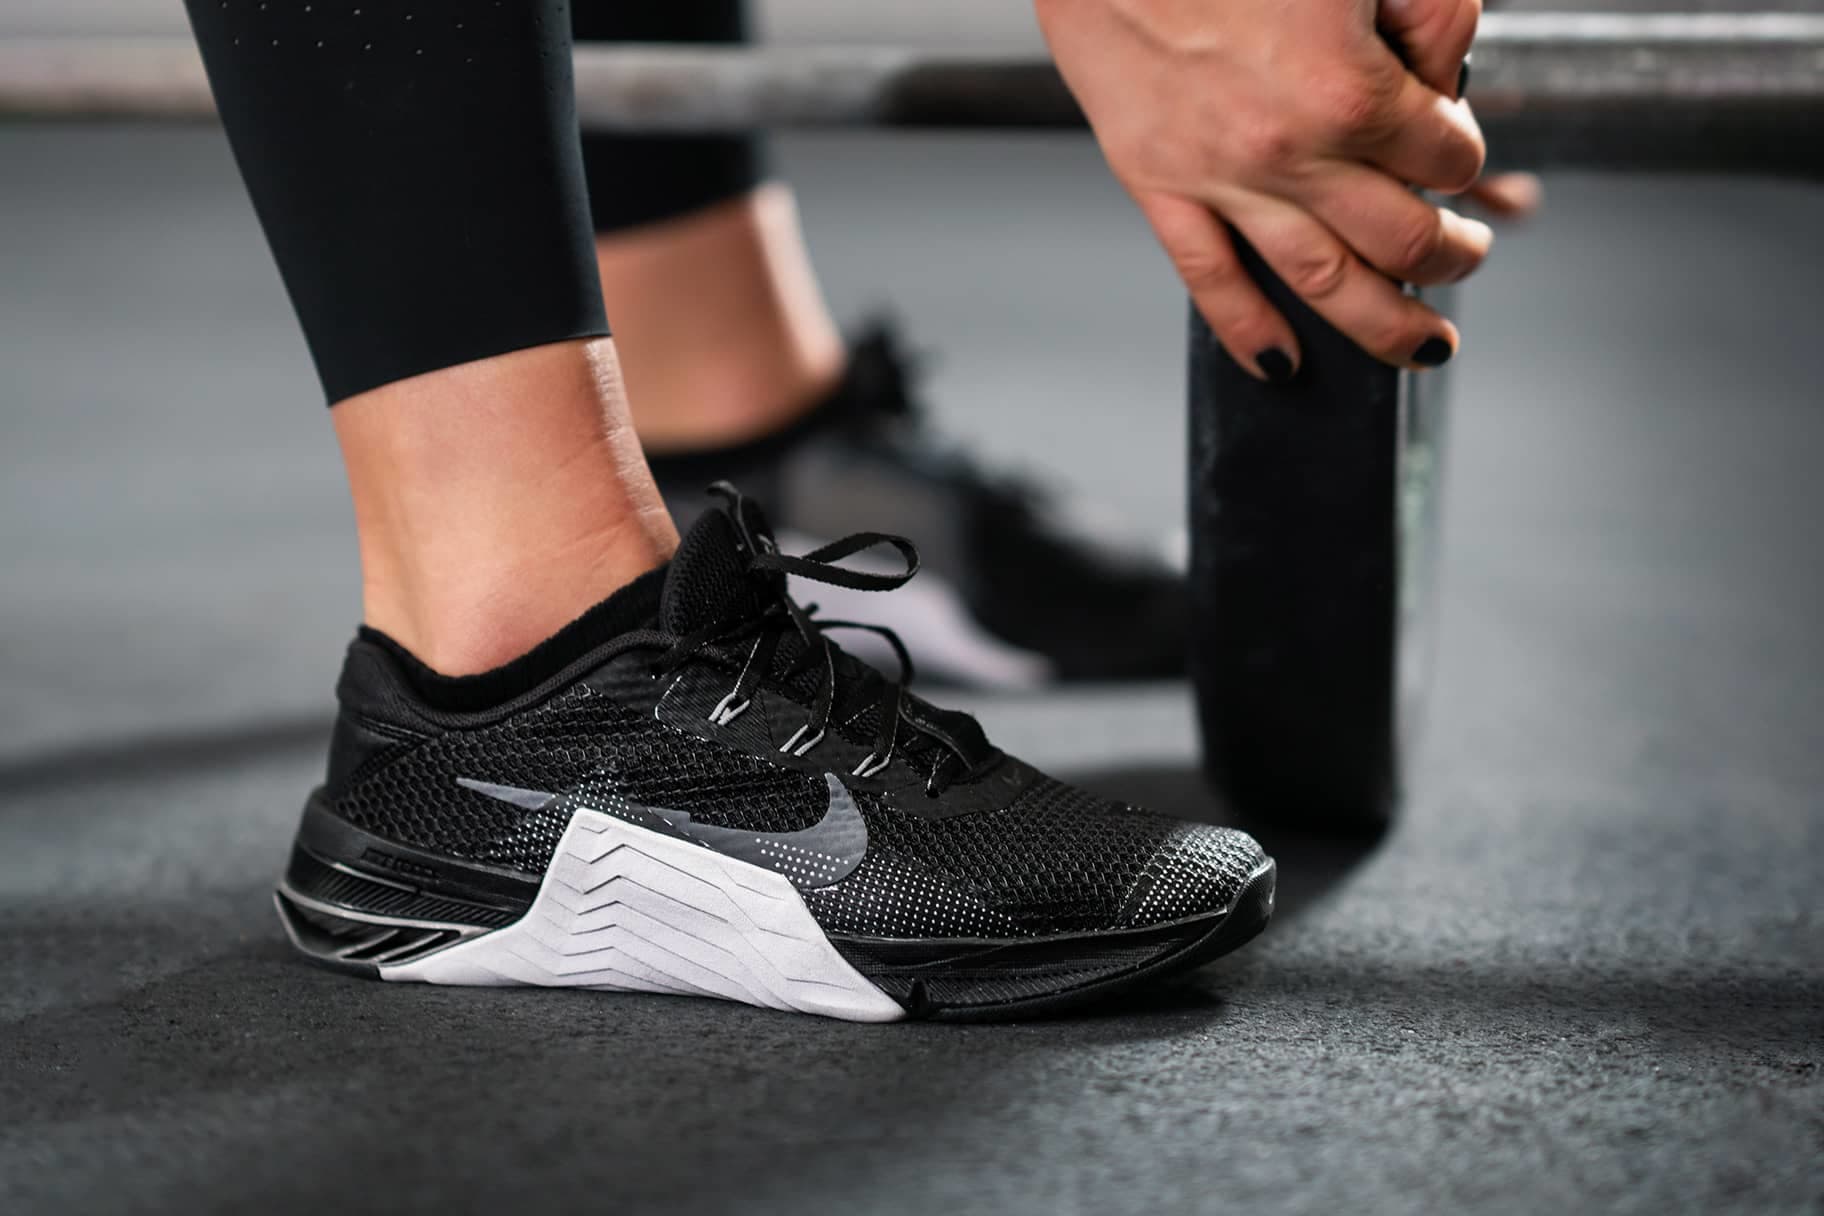 Paso virar Industrial Cuáles son las mejores zapatillas Nike para CrossFit?. Nike ES